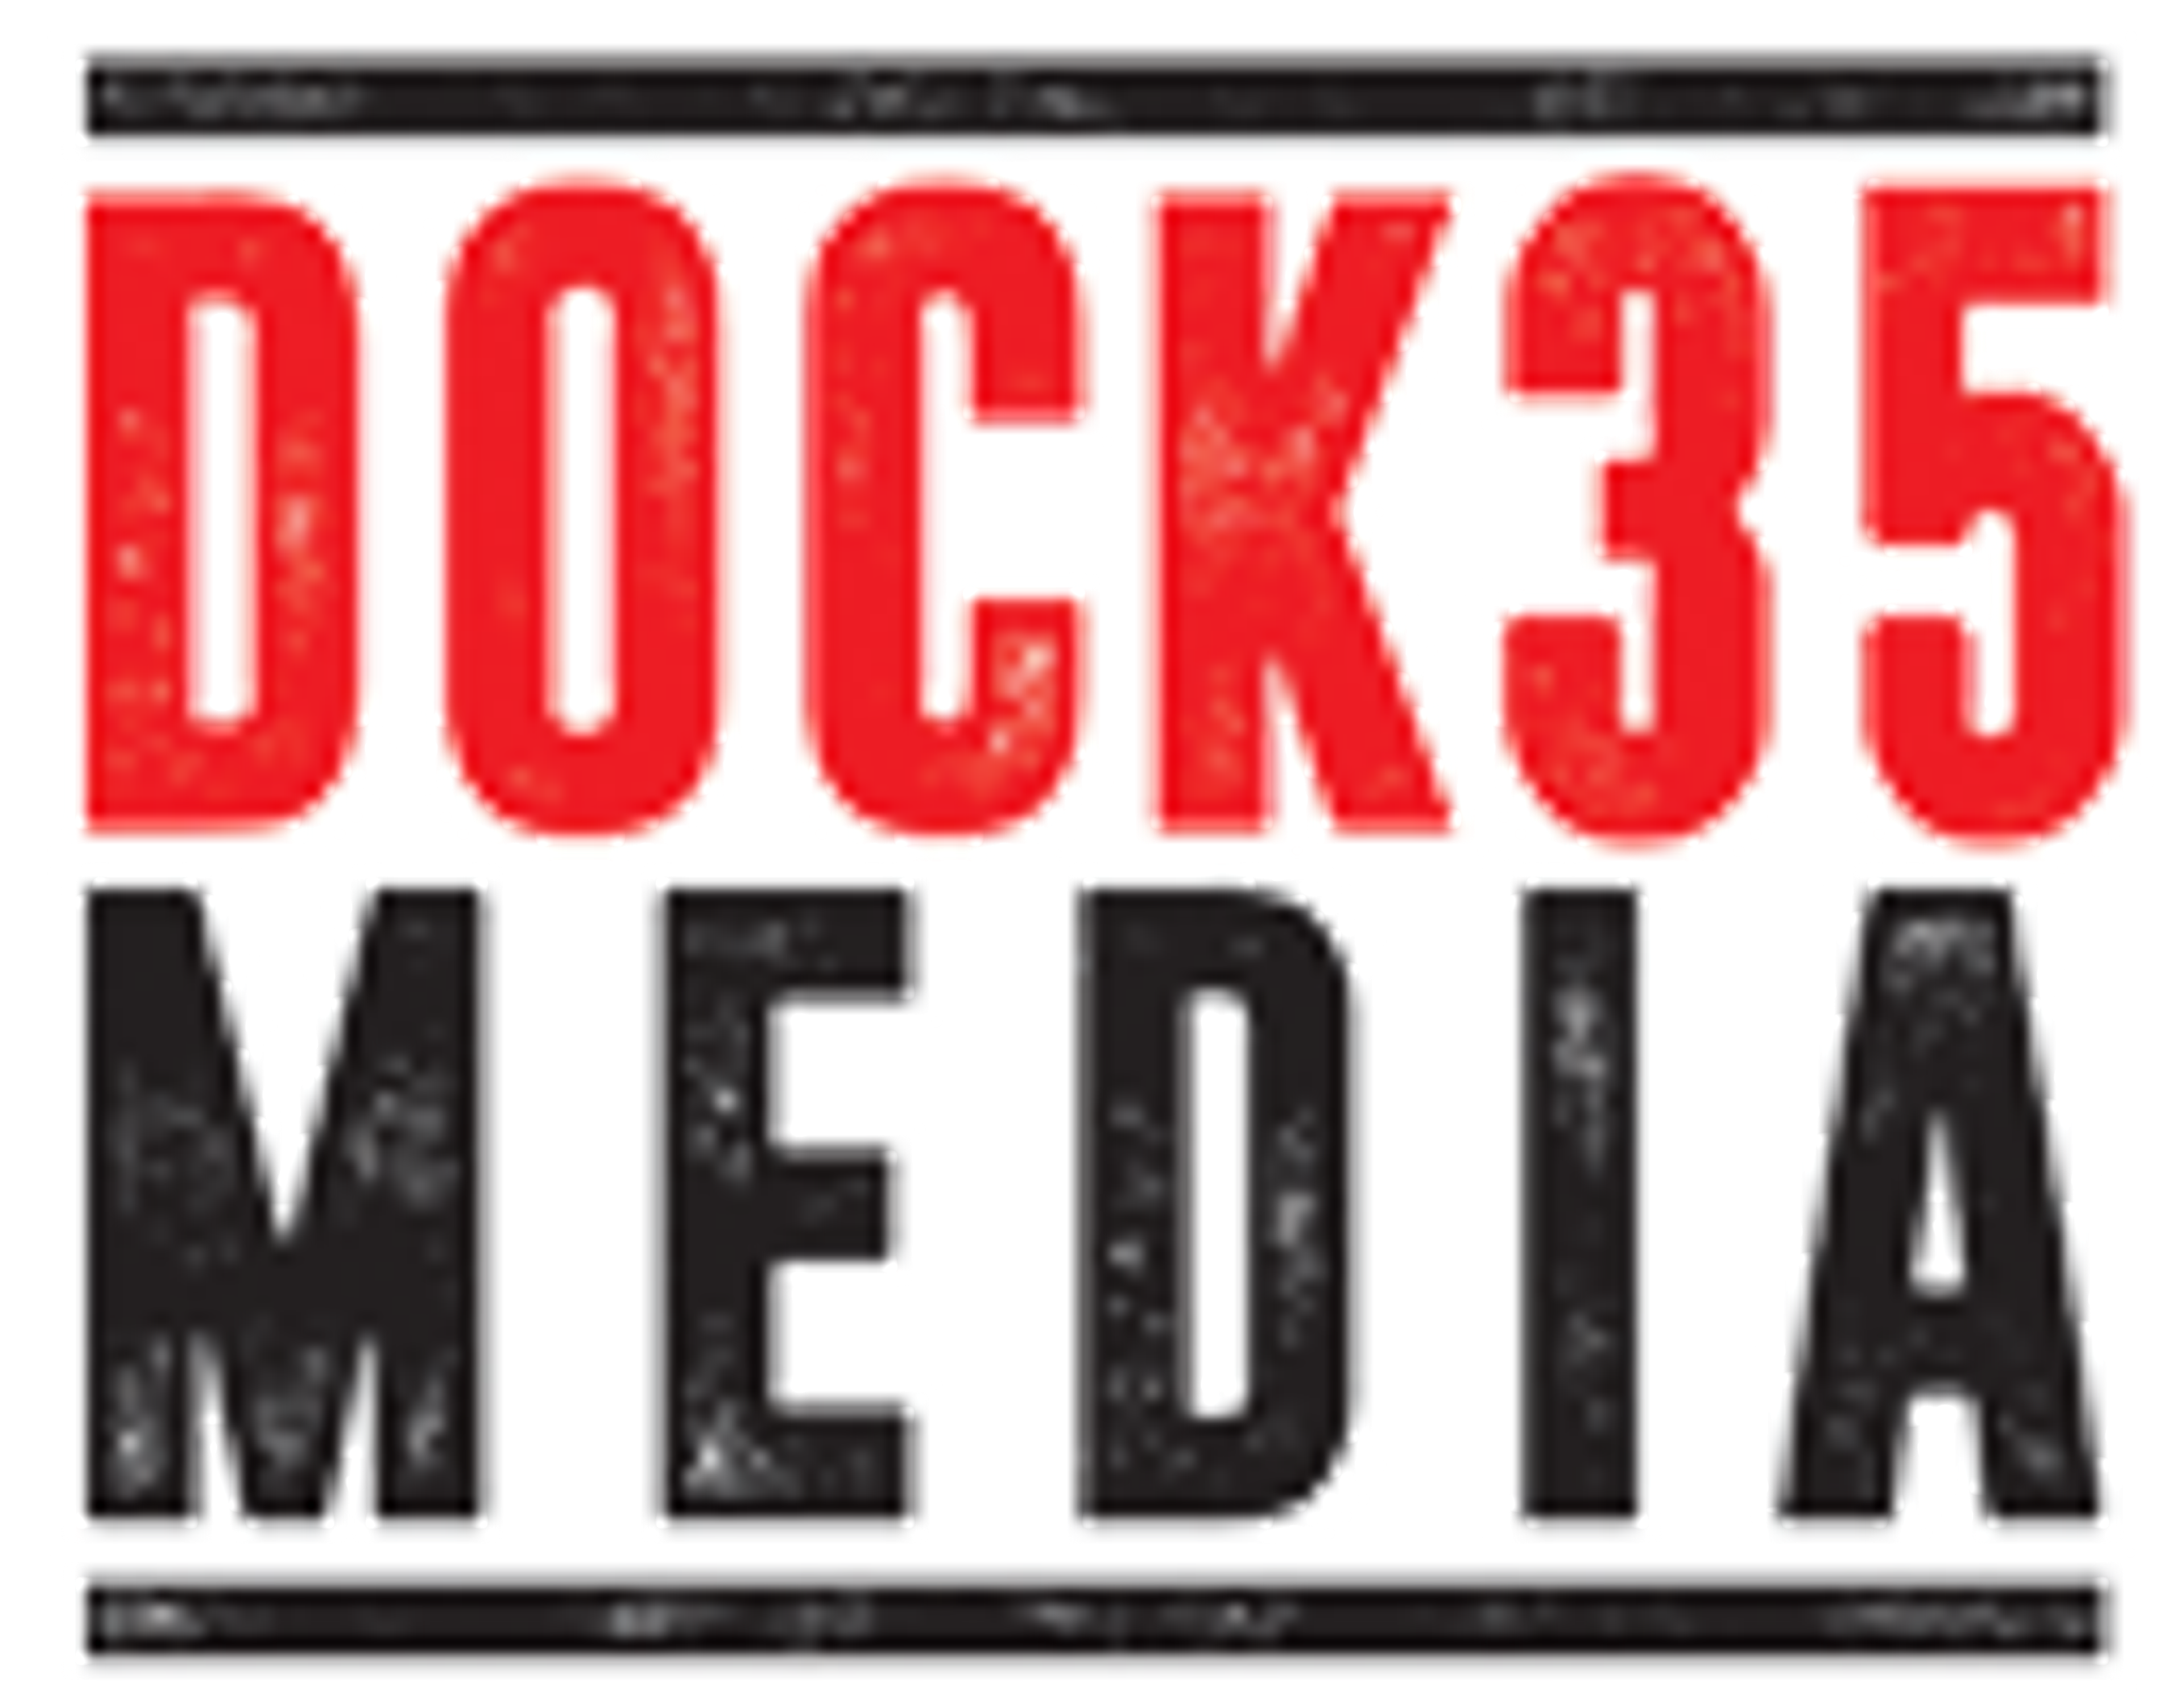 Dock35 Media